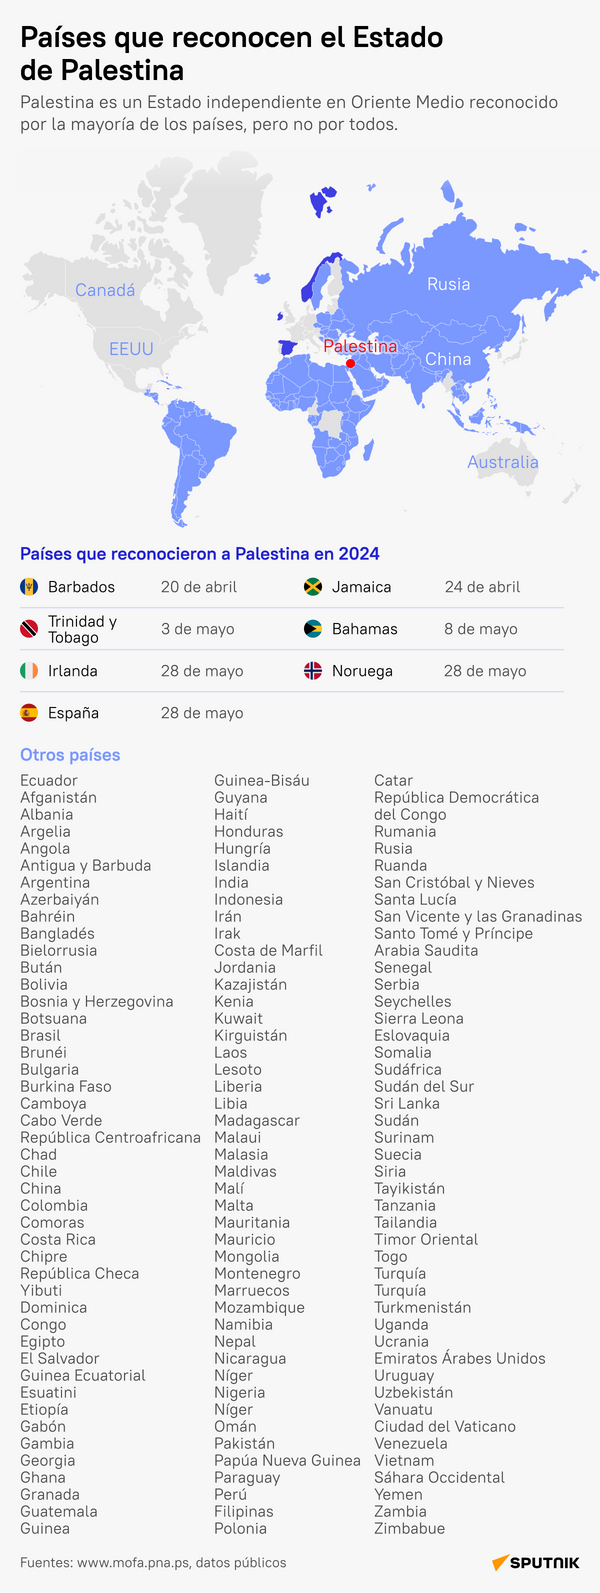 ¿Qué países reconocen el Estado de Palestina? - Sputnik Mundo